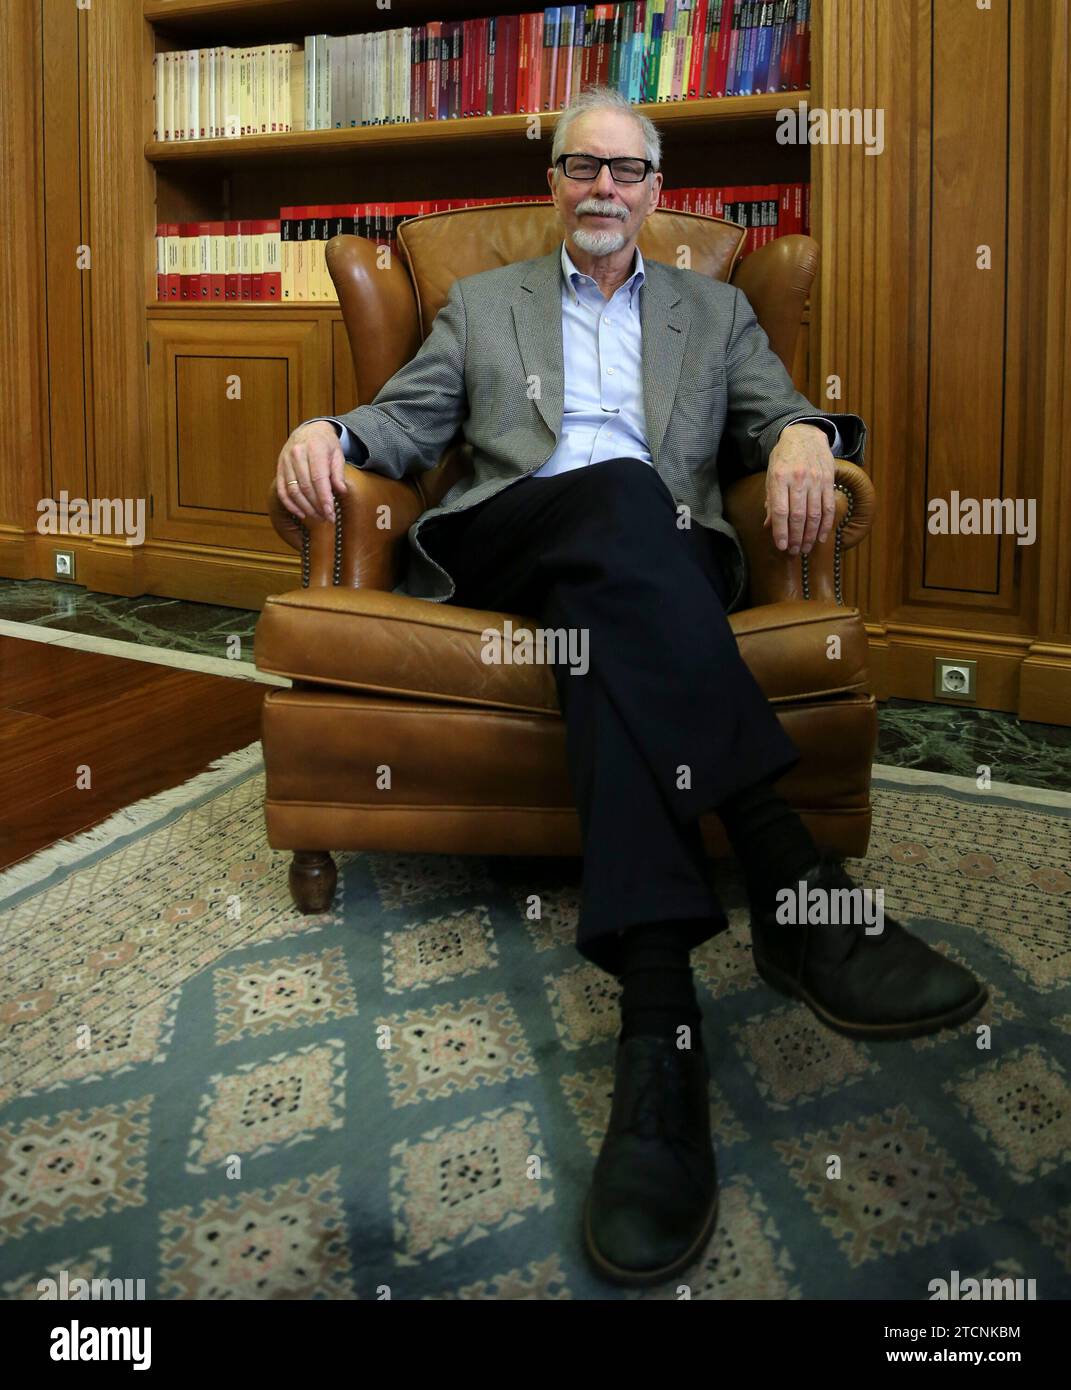 Madrid, 23.01.2020. Interview mit Genetiker Jef Boeke. Foto: Jaime García. Archdc. Quelle: Album / Archivo ABC / Jaime García Stockfoto